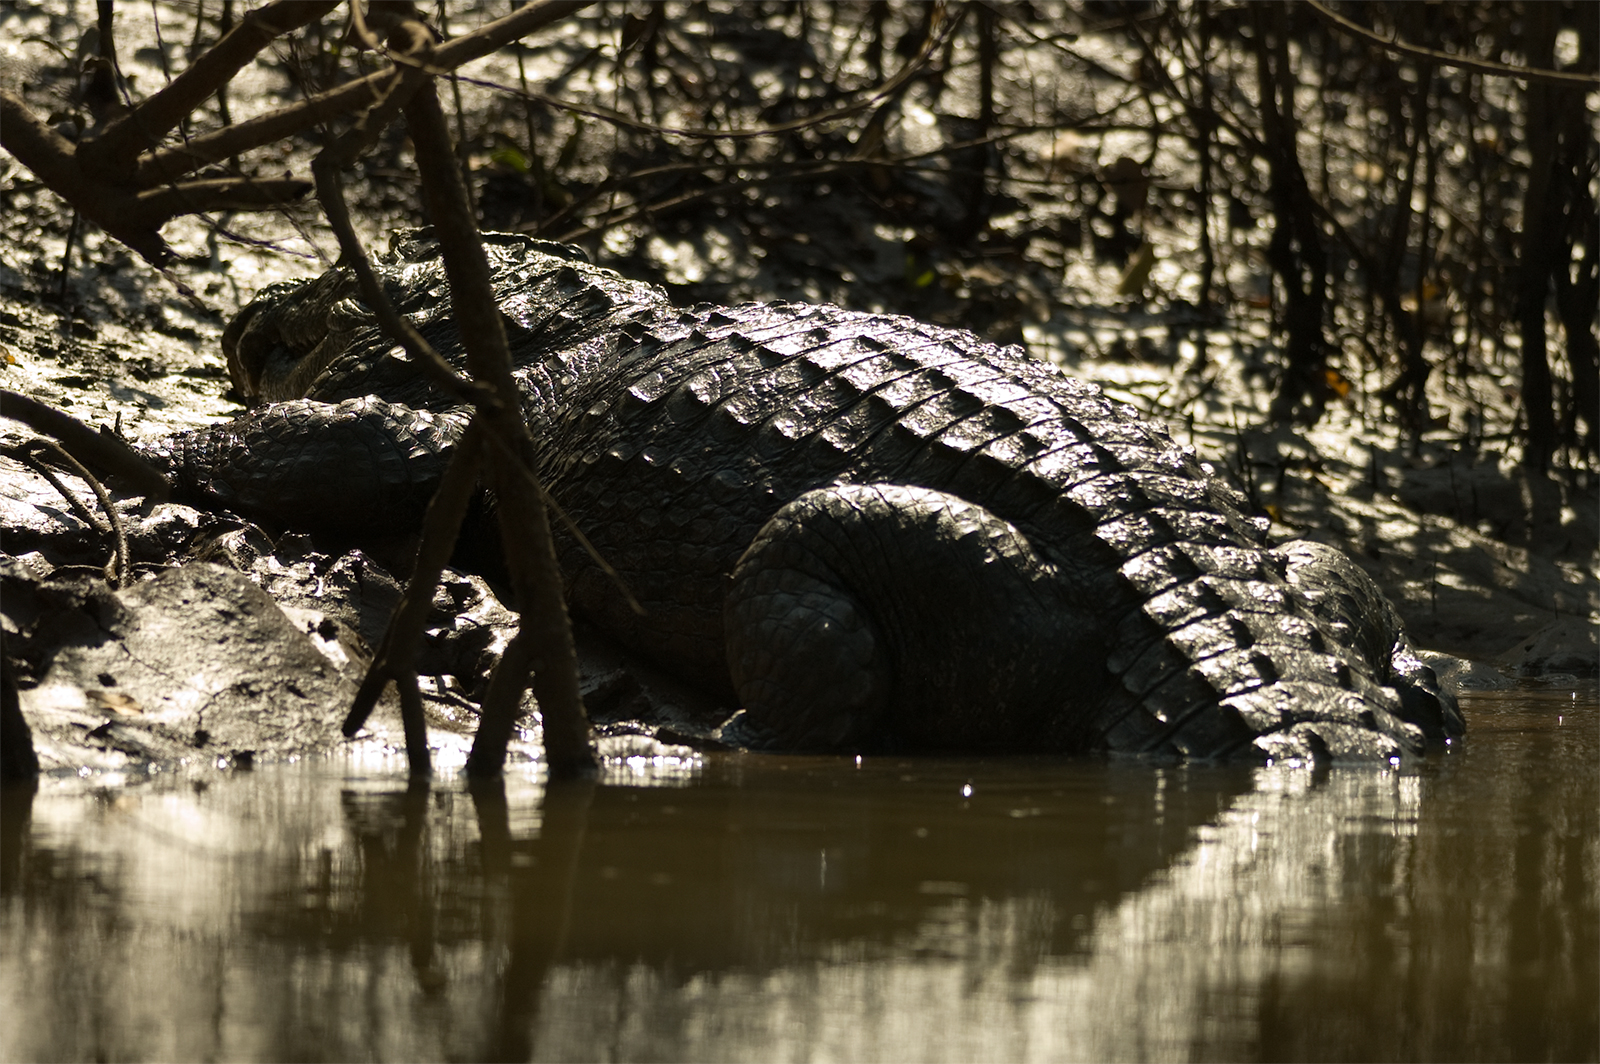 Fresh water crocodile in Cumbarjua Canal, Goa 2006.